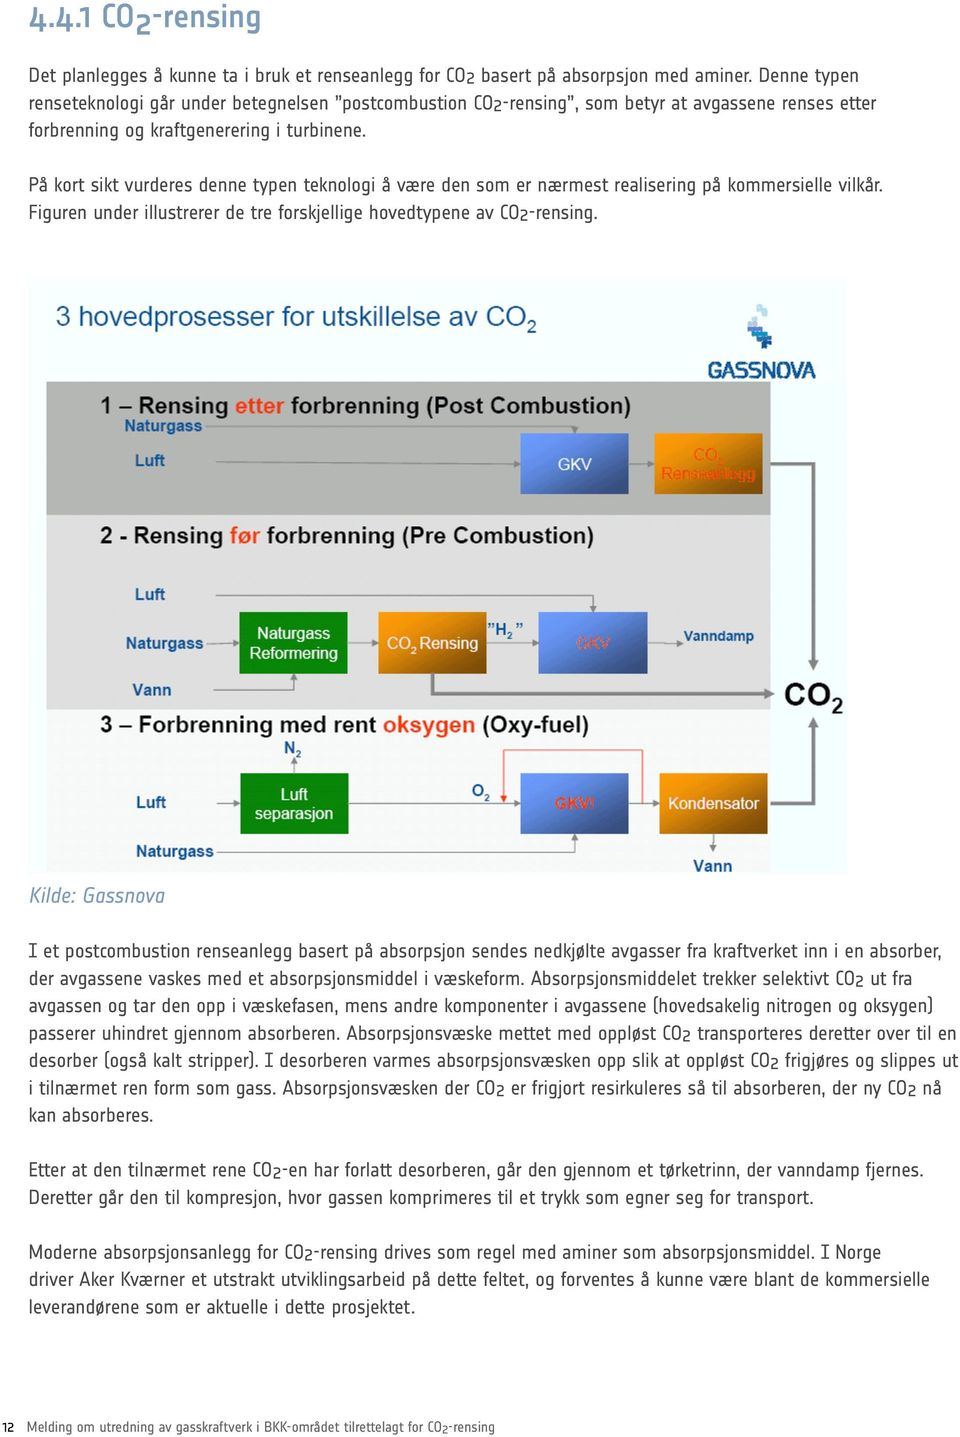 På kort sikt vurderes denne typen teknologi å være den som er nærmest realisering på kommersielle vilkår. Figuren under illustrerer de tre forskjellige hovedtypene av CO2-rensing.